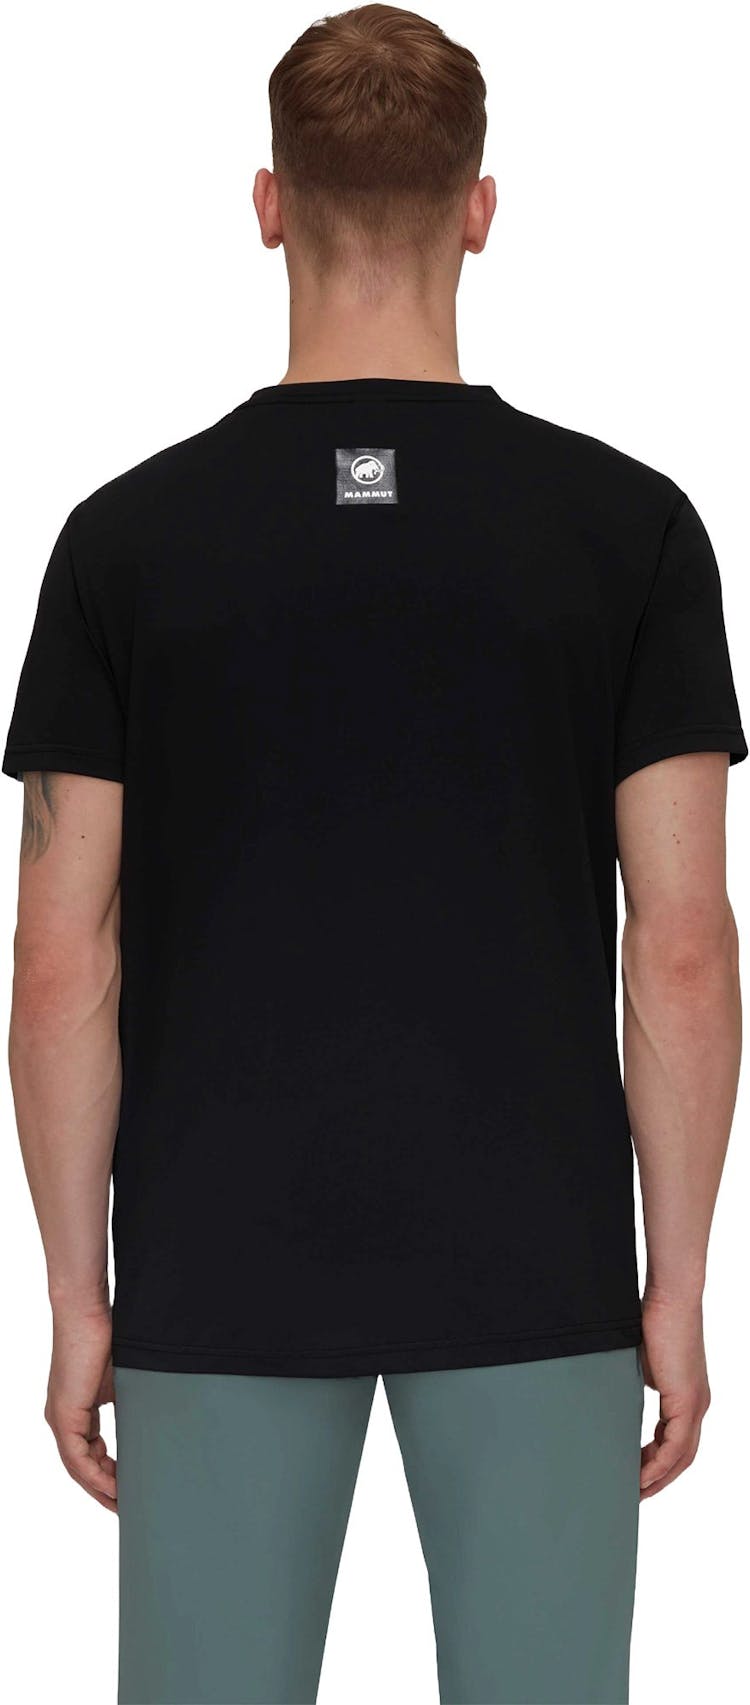 Numéro de l'image de la galerie de produits 4 pour le produit T-shirt Sport Massone - Homme